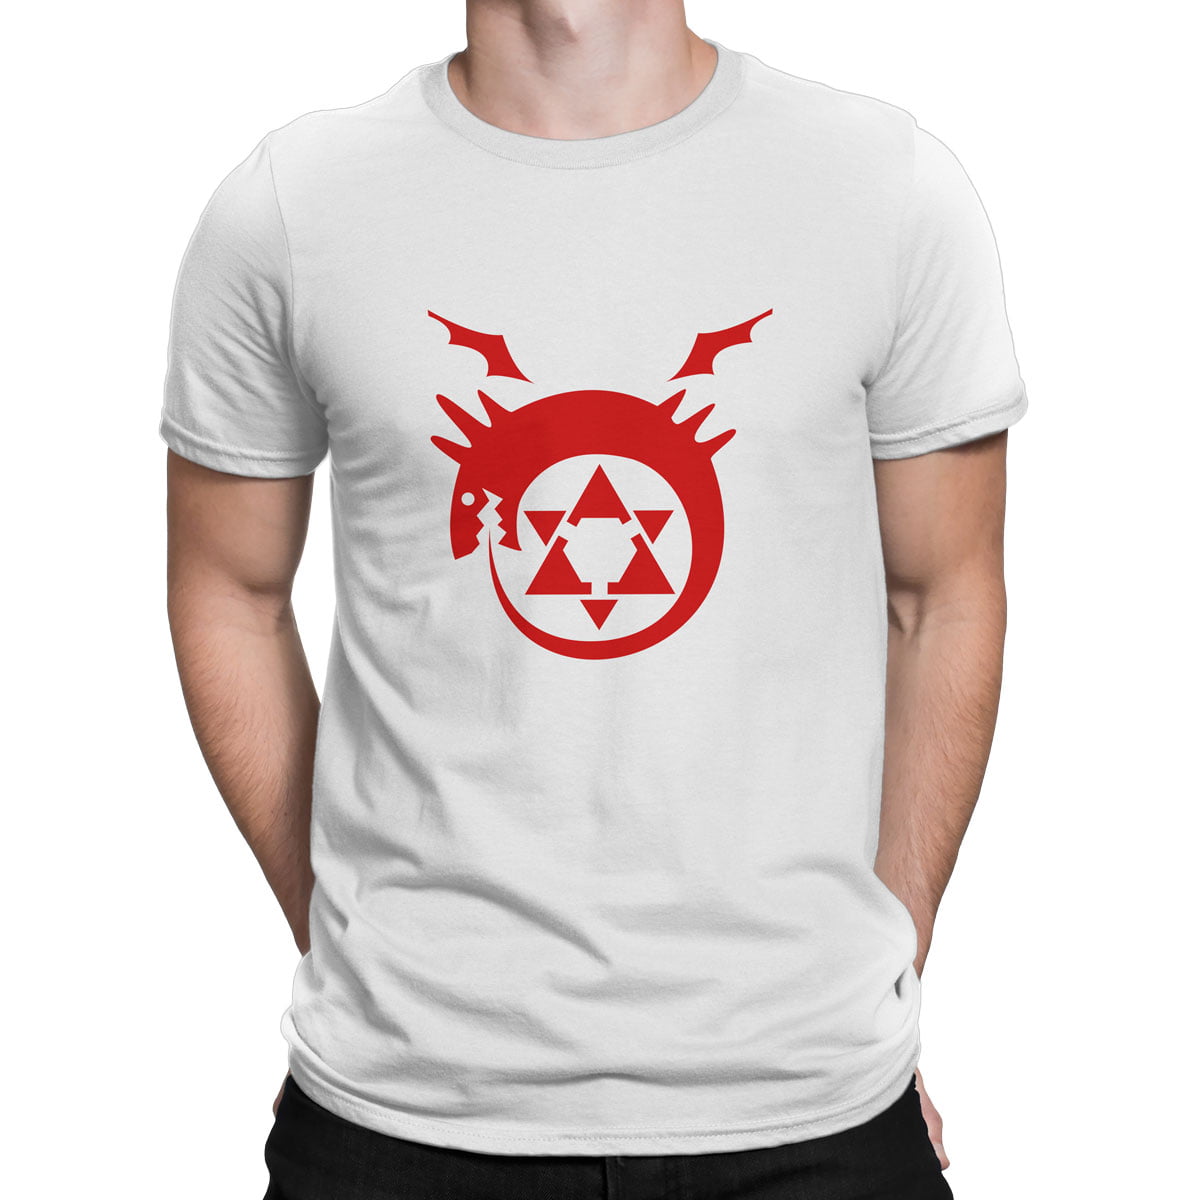 Fma logo tisort erkek b - fullmetal alchemist baskılı erkek t-shirt - figurex